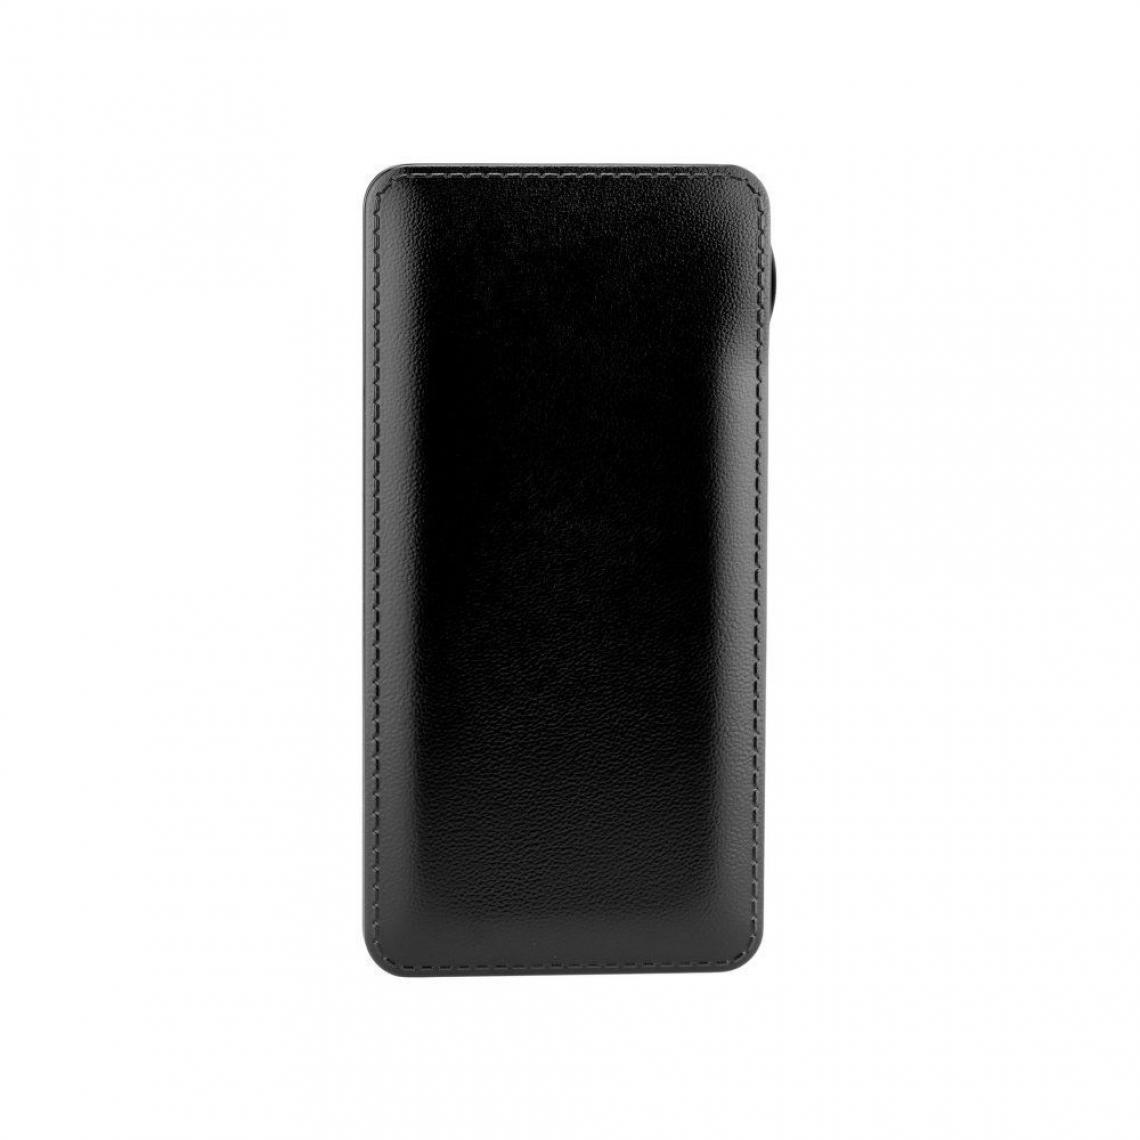 Ozzzo - Chargeur batterie externe 30000 mAh powerbank ozzzo noir pour Nokia 3.4 2020 - Autres accessoires smartphone